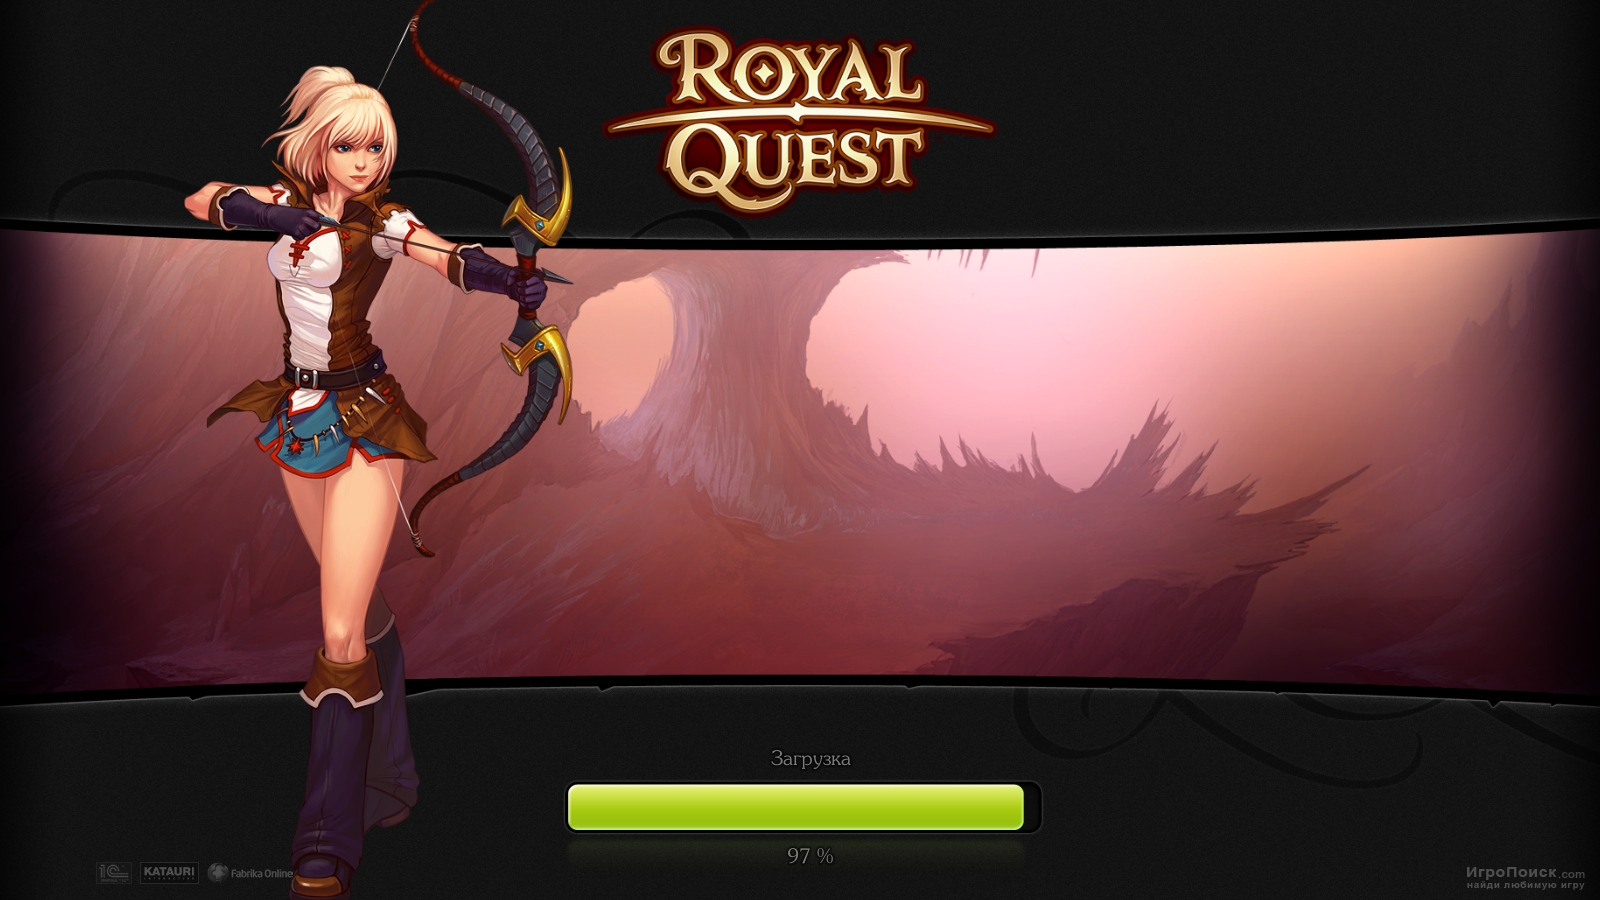    Royal Quest